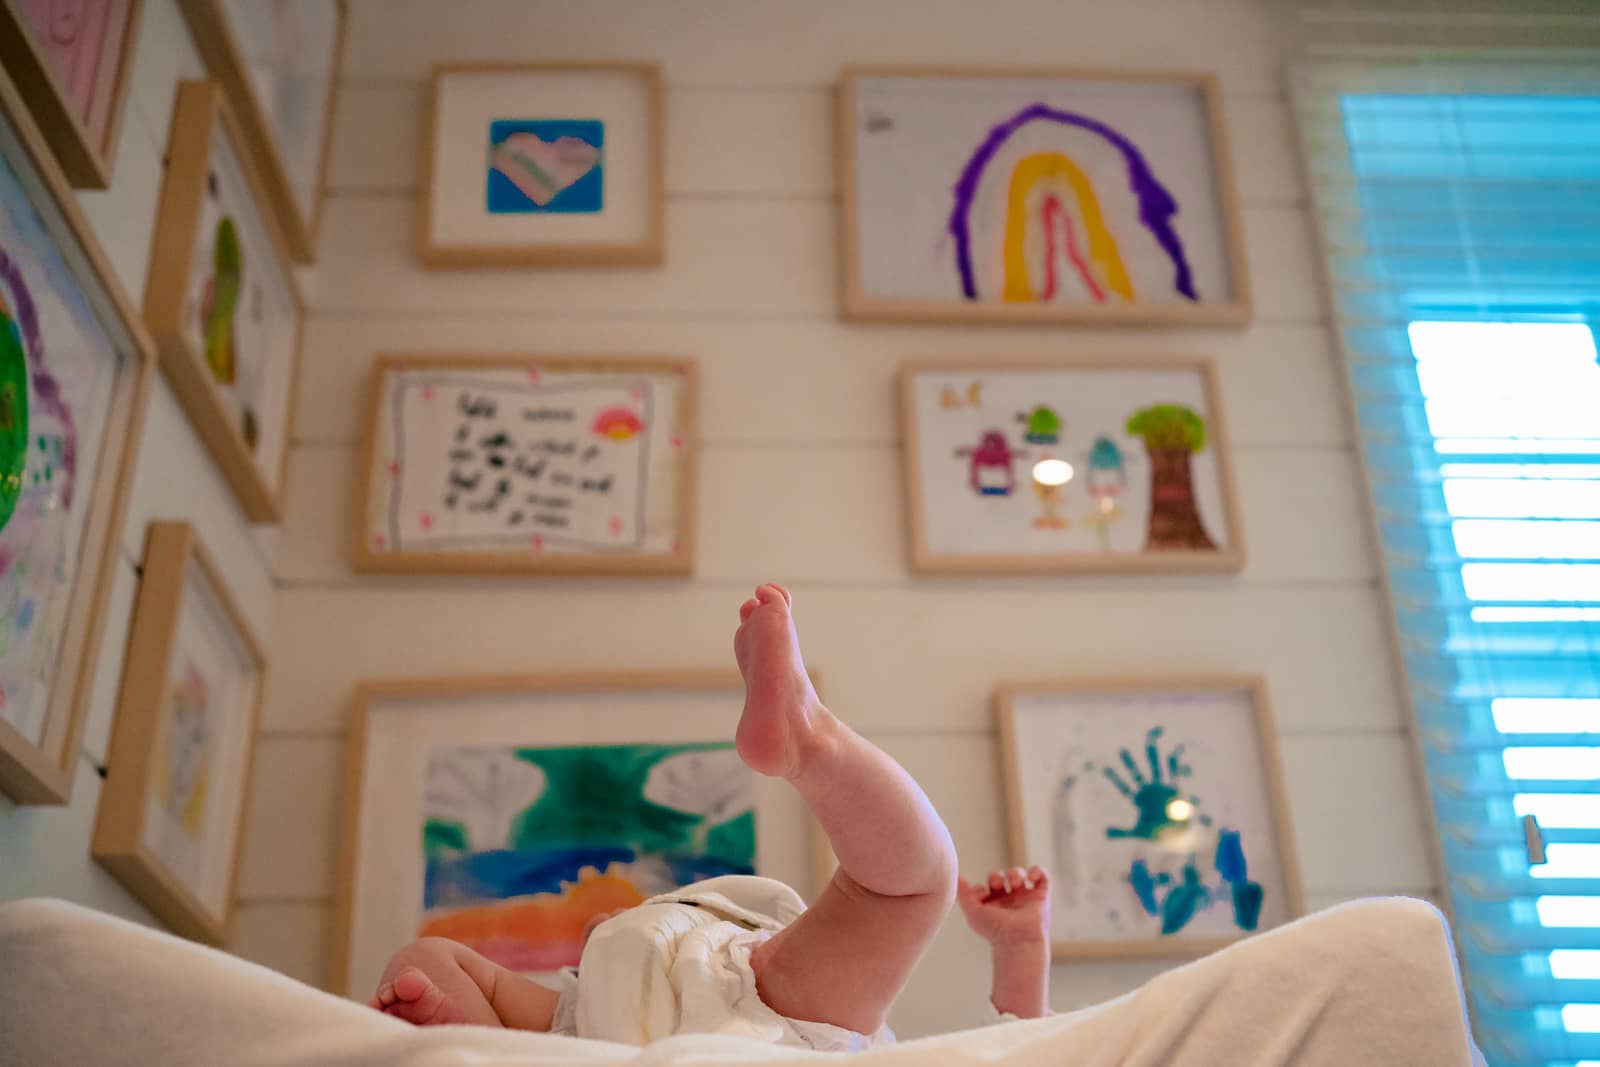 Les jambes d'un bébé au premier plan avec derrière un mur replis de dessin des enfants.